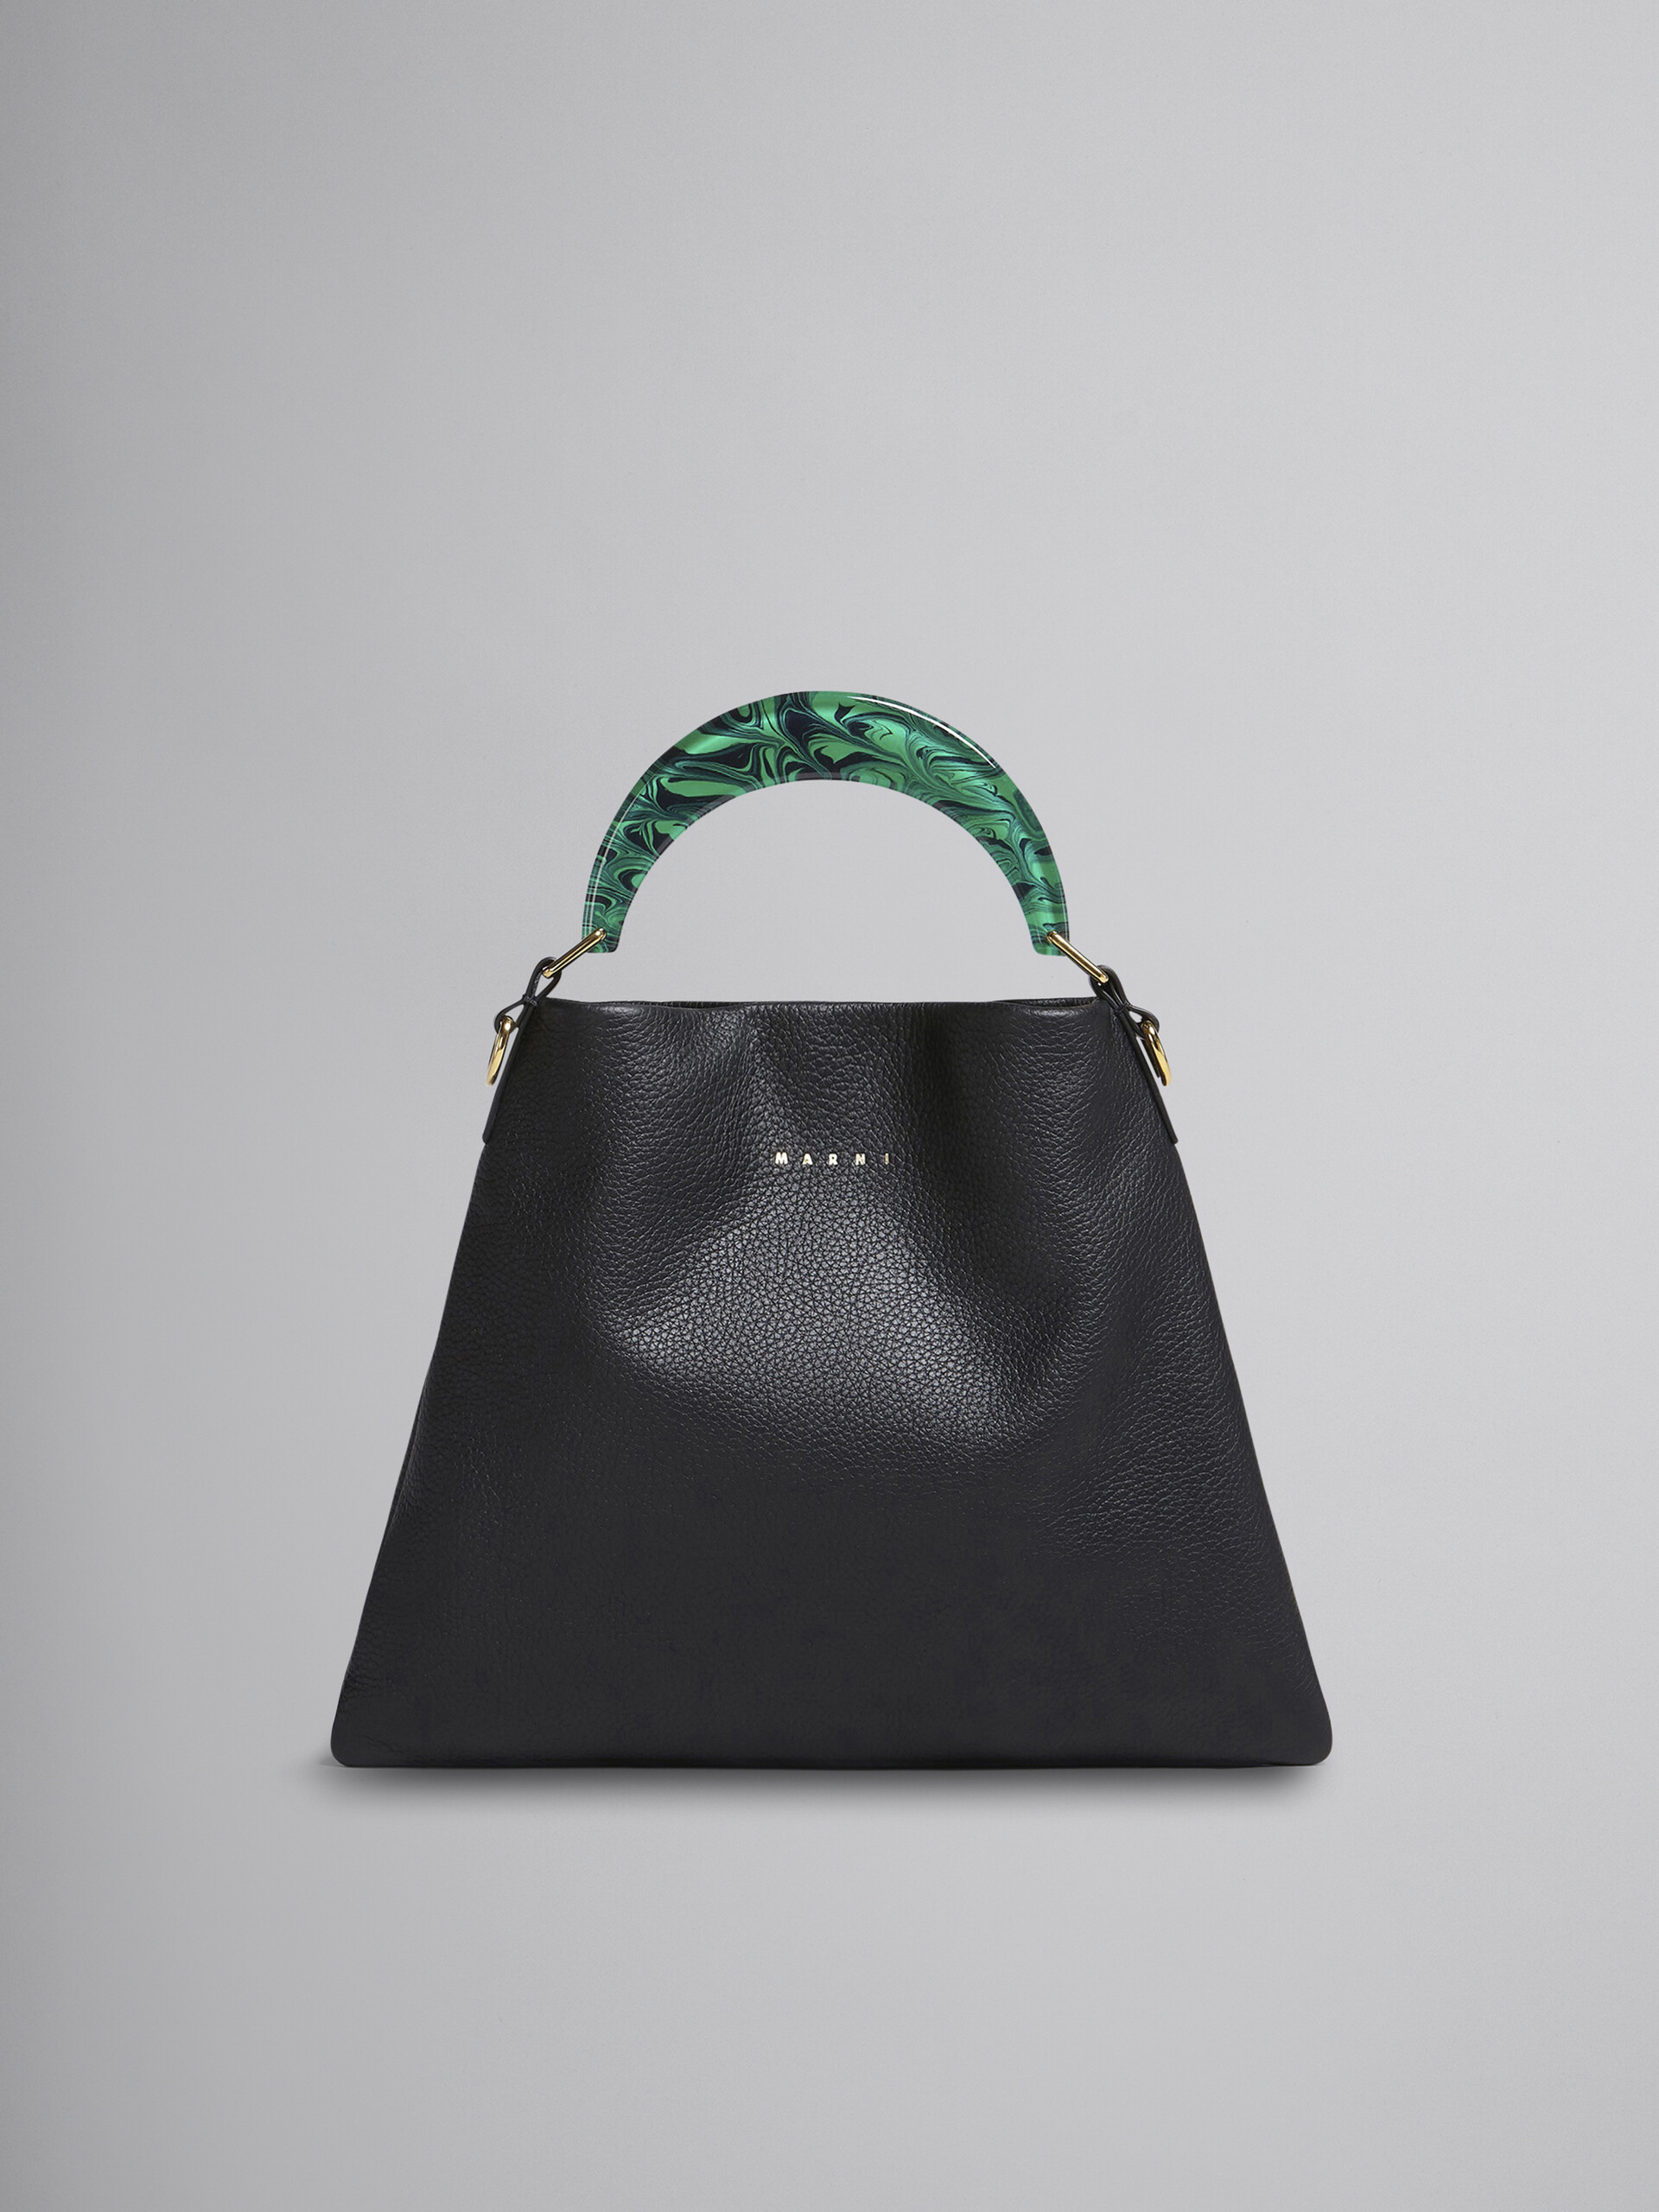 Venice Small Bag in black leather - Shoulder Bag - Image 1